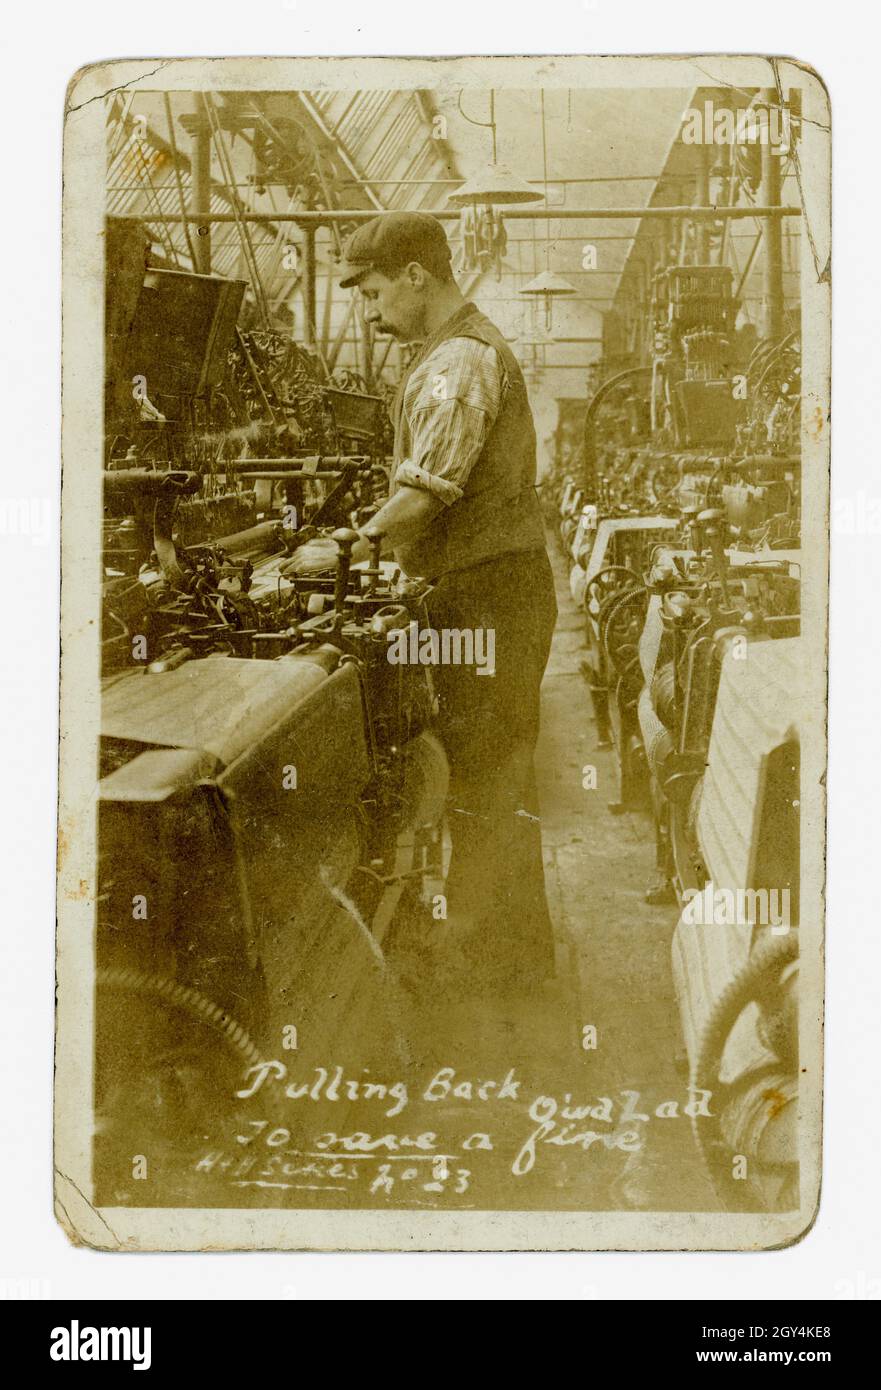 Die ursprüngliche Postkarte aus der Zeit Edwardians mit dem Titel 'Pulling Back Quick Lad to Save a Fine' zeigt die schlechten Arbeitsbedingungen dieser Zeit - niedrige Löhne, ungesunde feuchte und staubige Arbeitsplätze, Strafen und Bußgelder - . Foto eines jungen Mannes, der eine Webmaschine in einer Baumwollfabrik Betrieb, Nelson, Pendle, Lancashire, Großbritannien, um 1905. Stockfoto